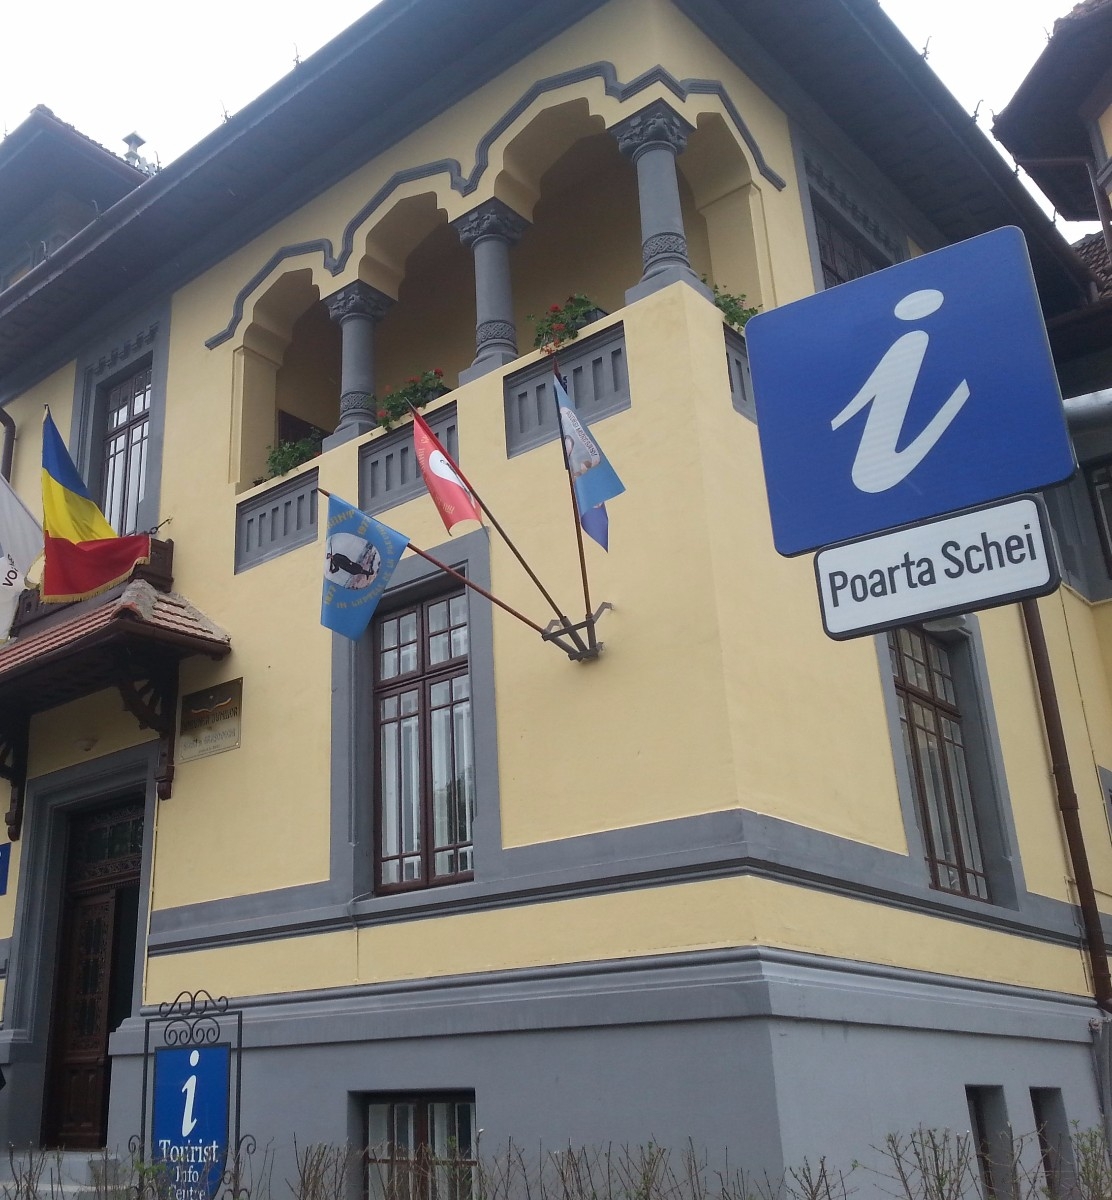 Tourist Information Center Brasov - Poarta Schei